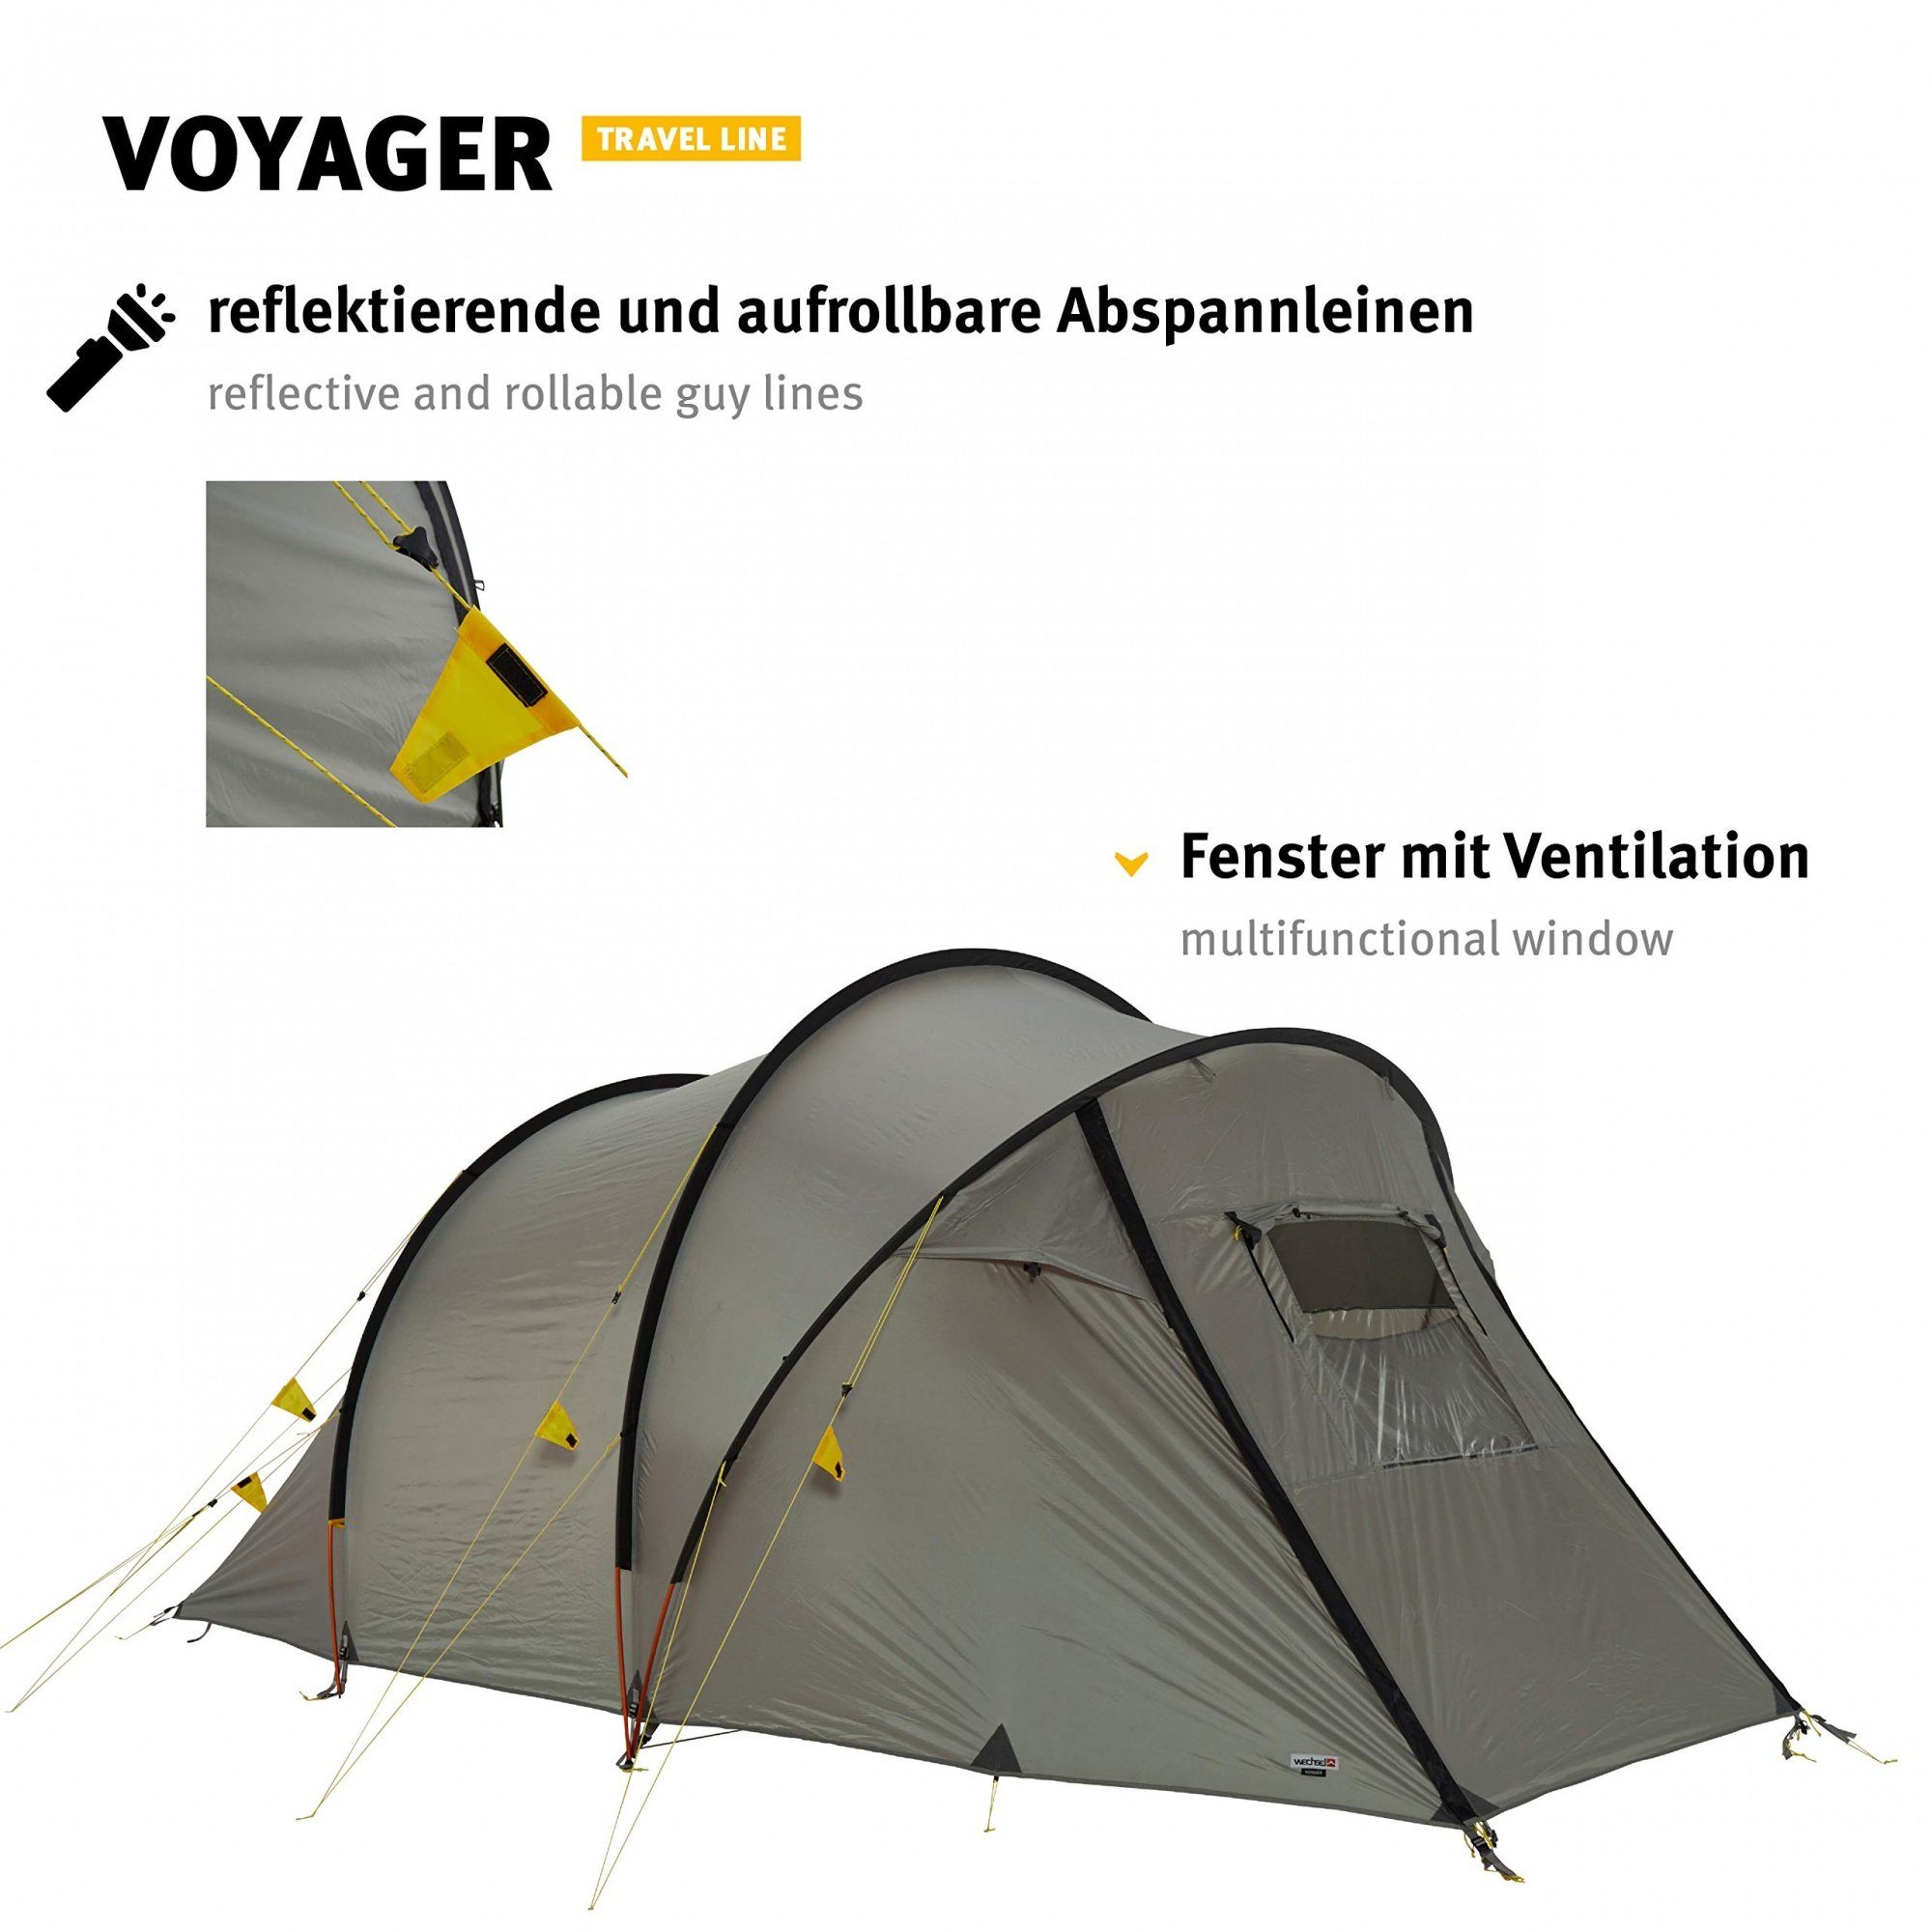 4 Wechsel Personen: Stehhöhe Zelt, - Personen Tents Tunnelzelt Familienzelt 1,80 Voyager m, 4 Travel - Line